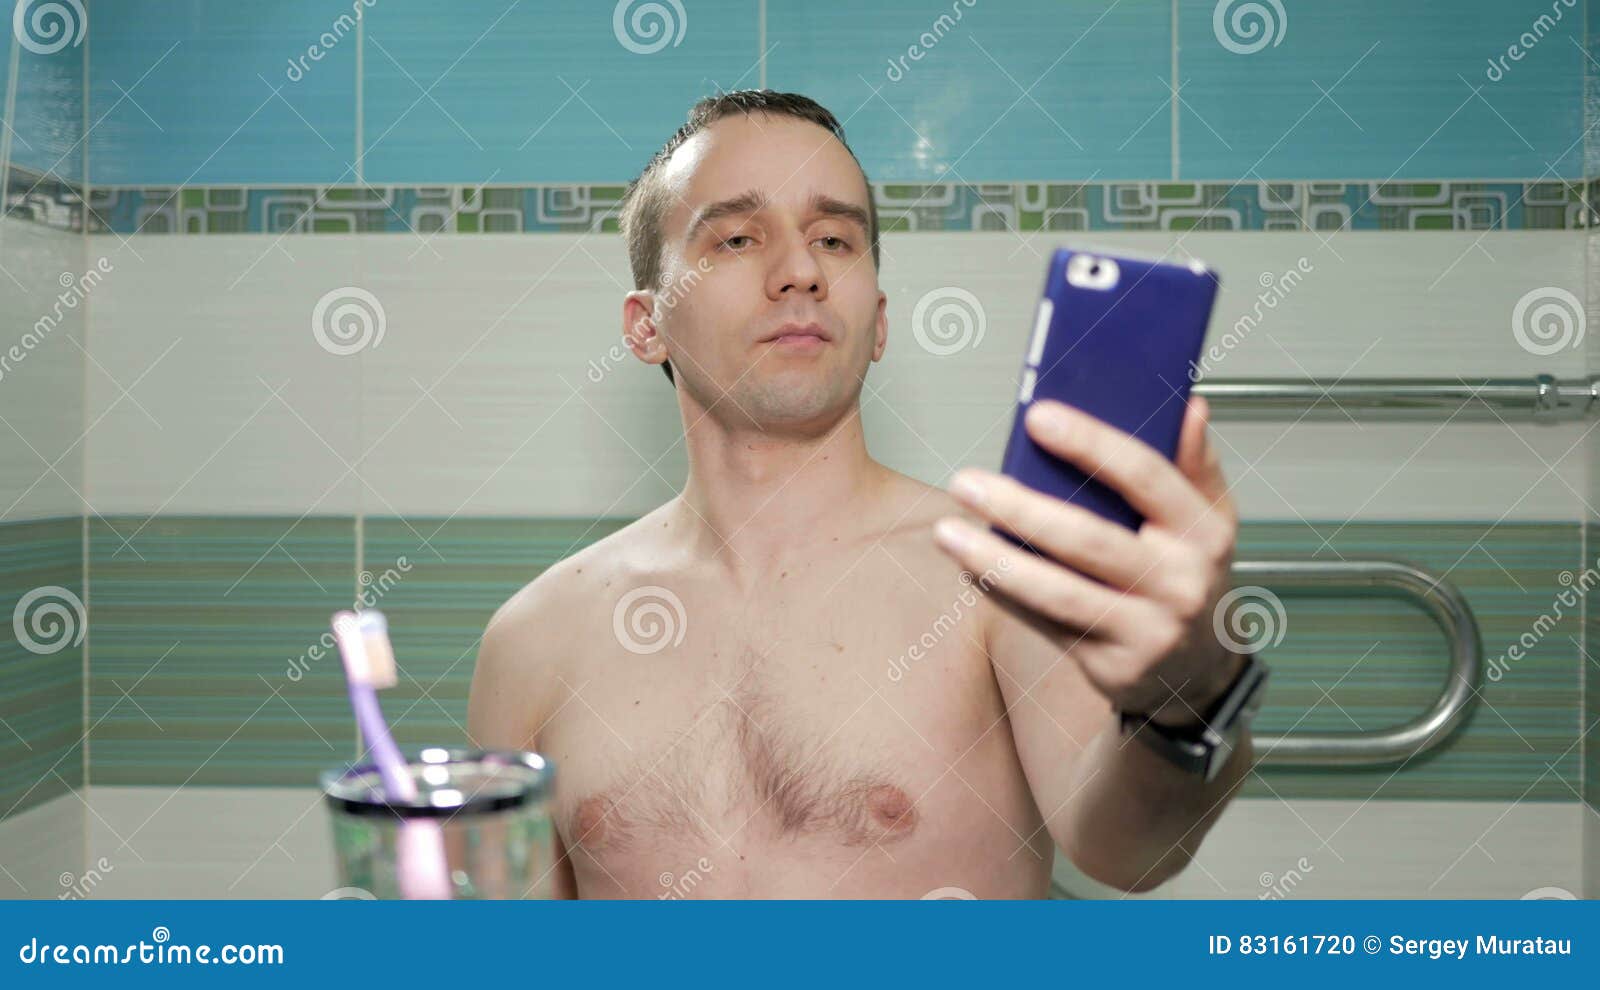 Guy bathroom selfies